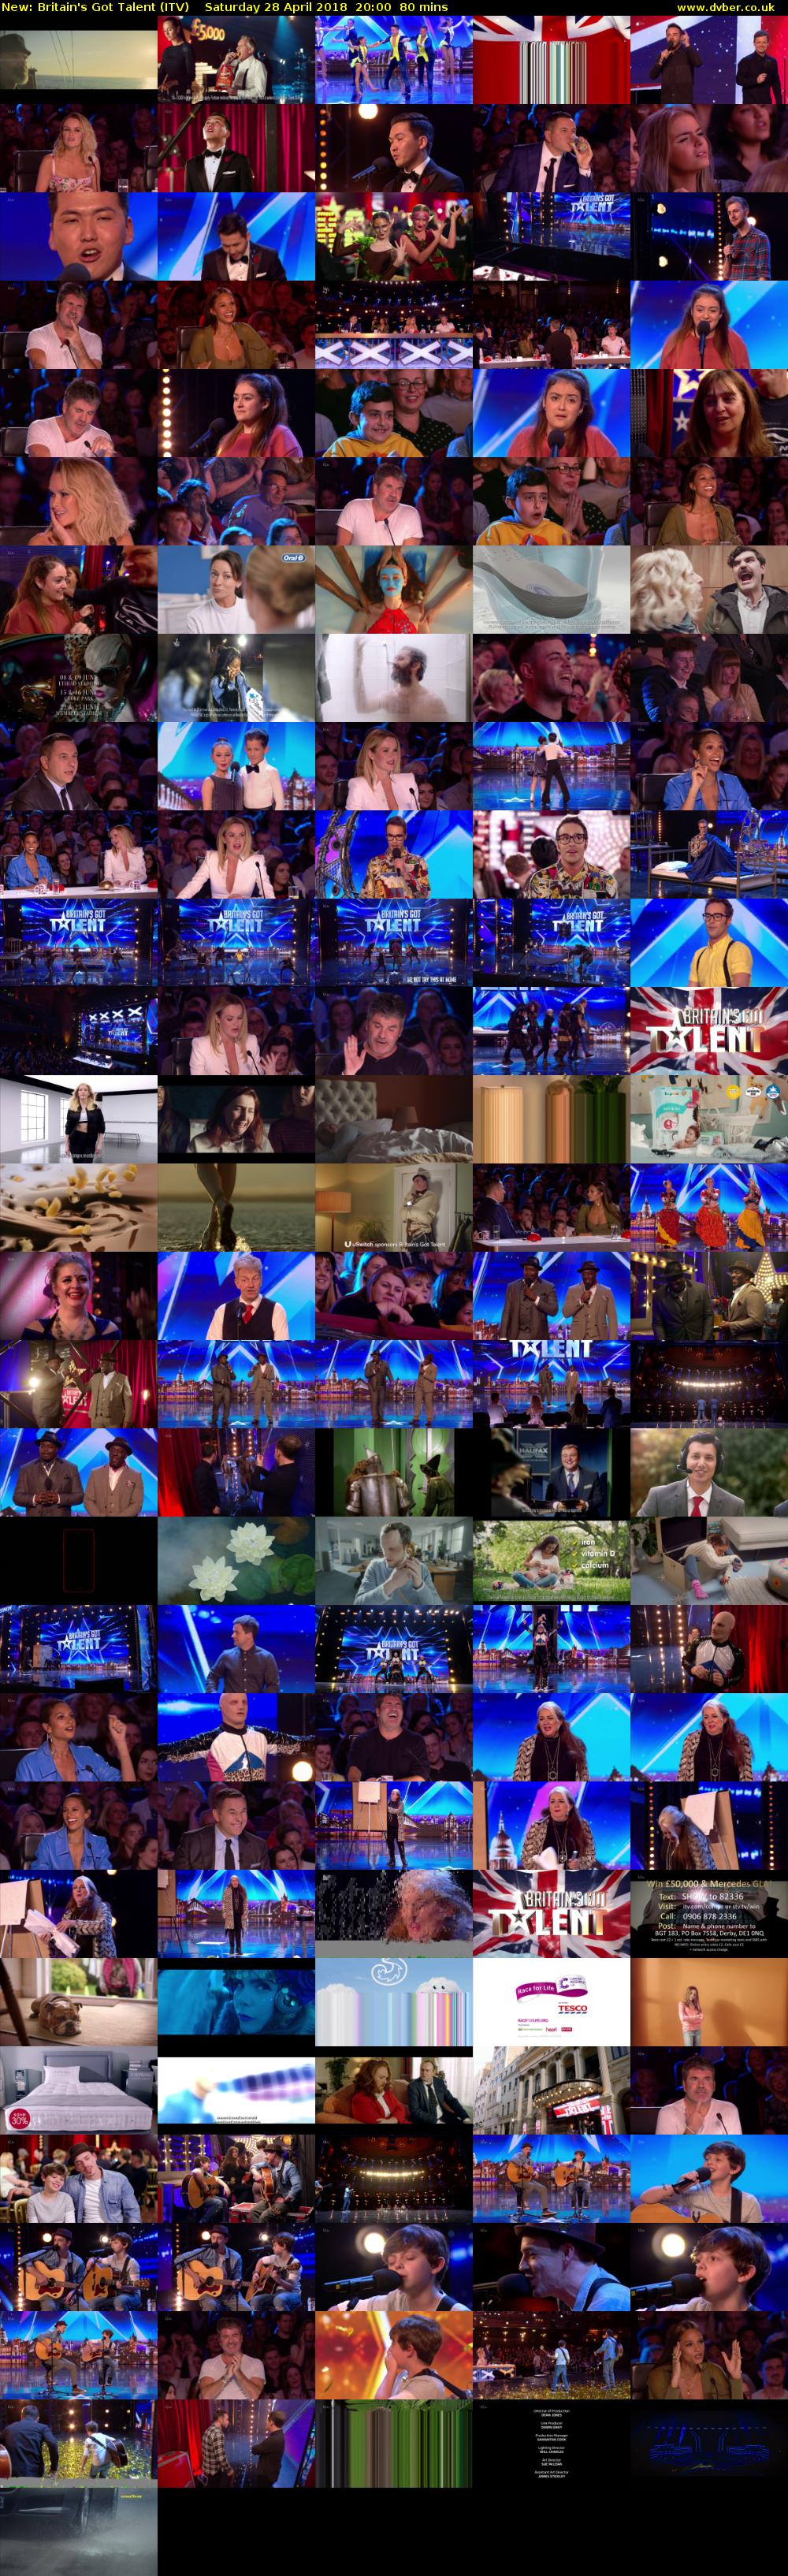 Britain's Got Talent (ITV) Saturday 28 April 2018 20:00 - 21:20